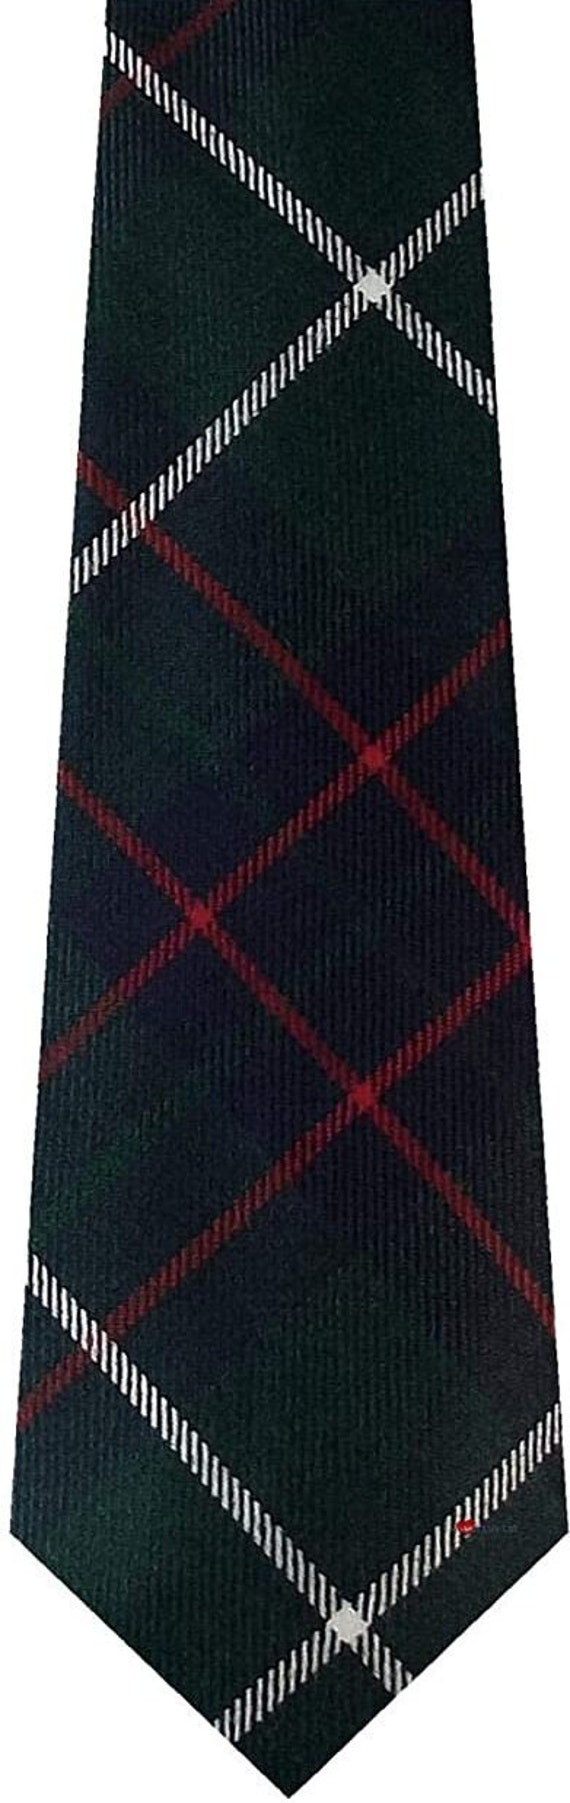 Mens Clan Tie Made in Scotland MacIntyre Hunting Modern Tartan 